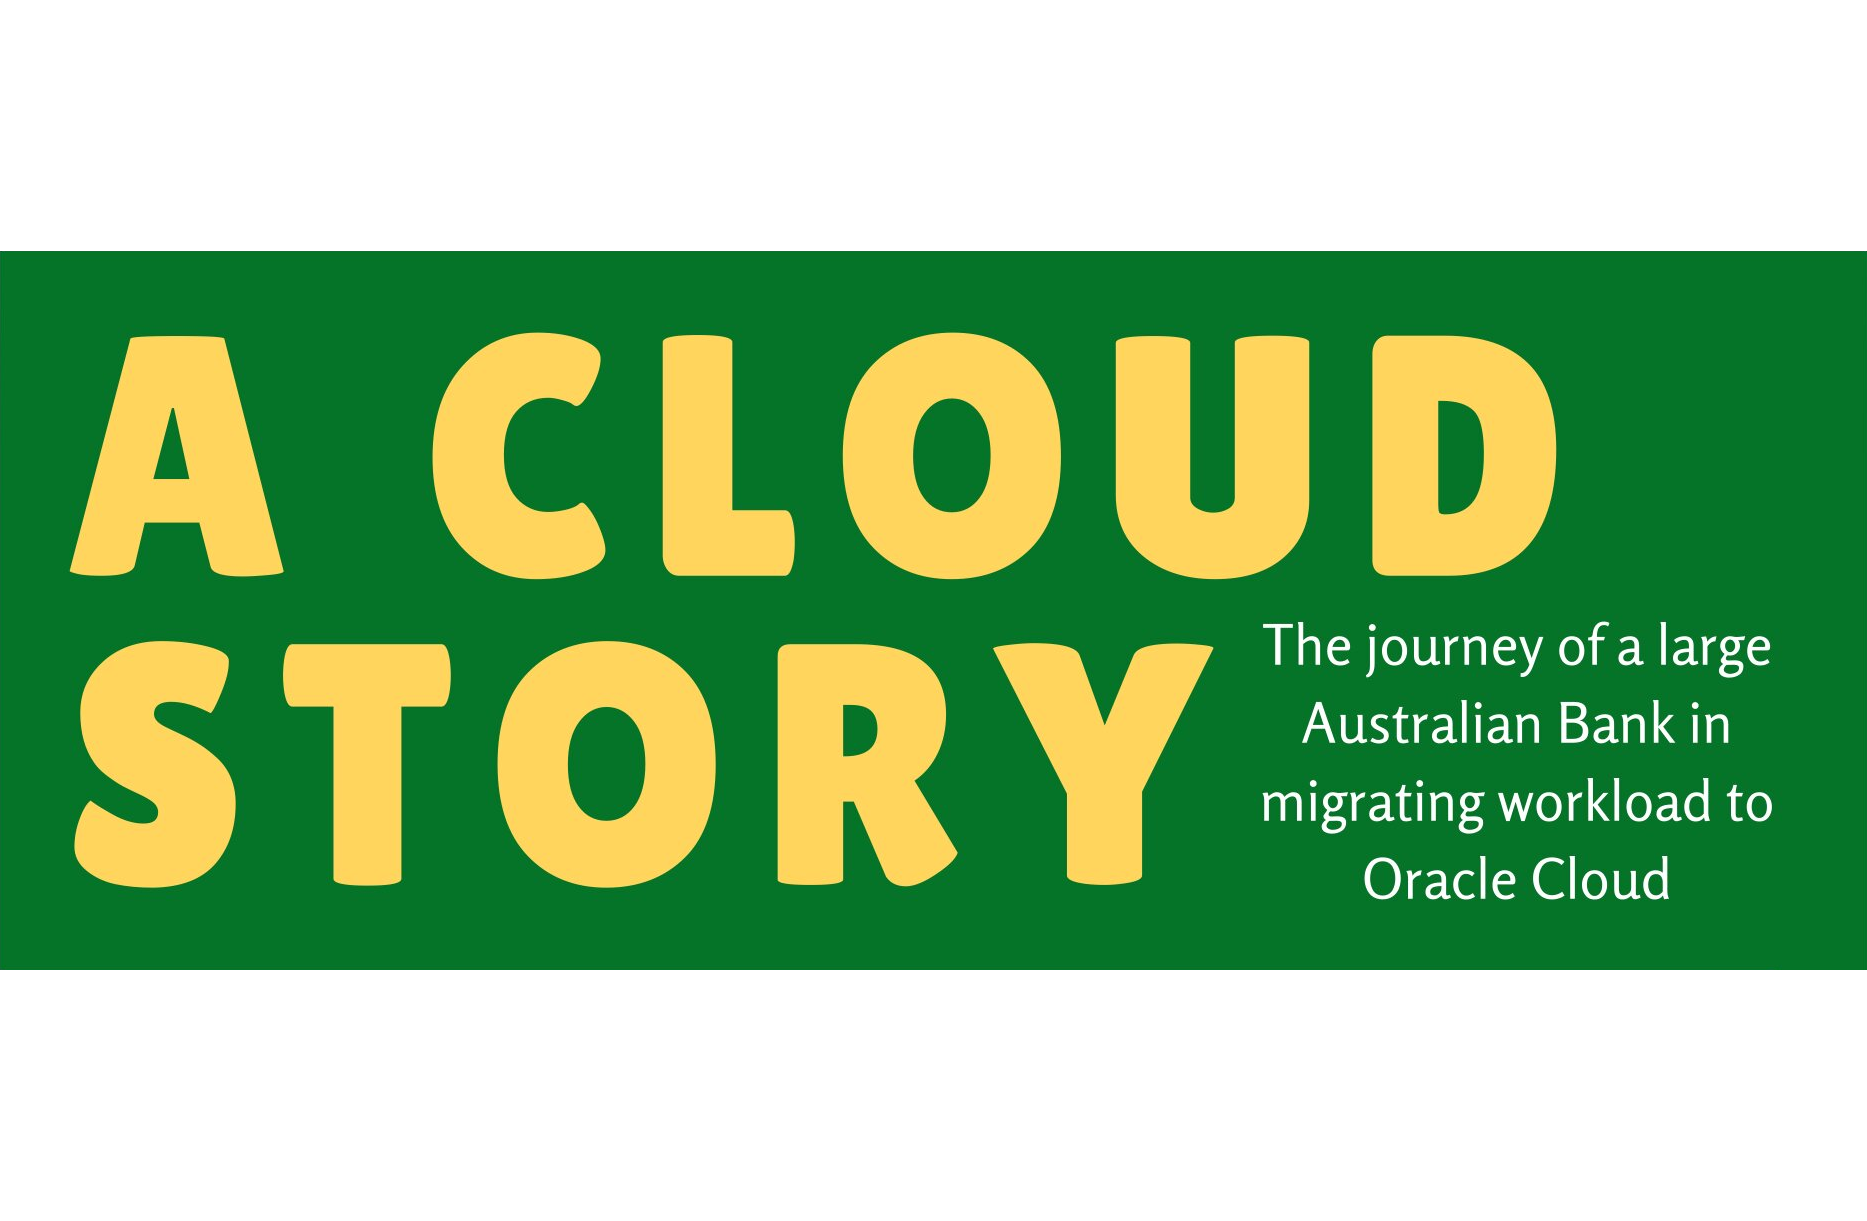 Cloud Migration Journey